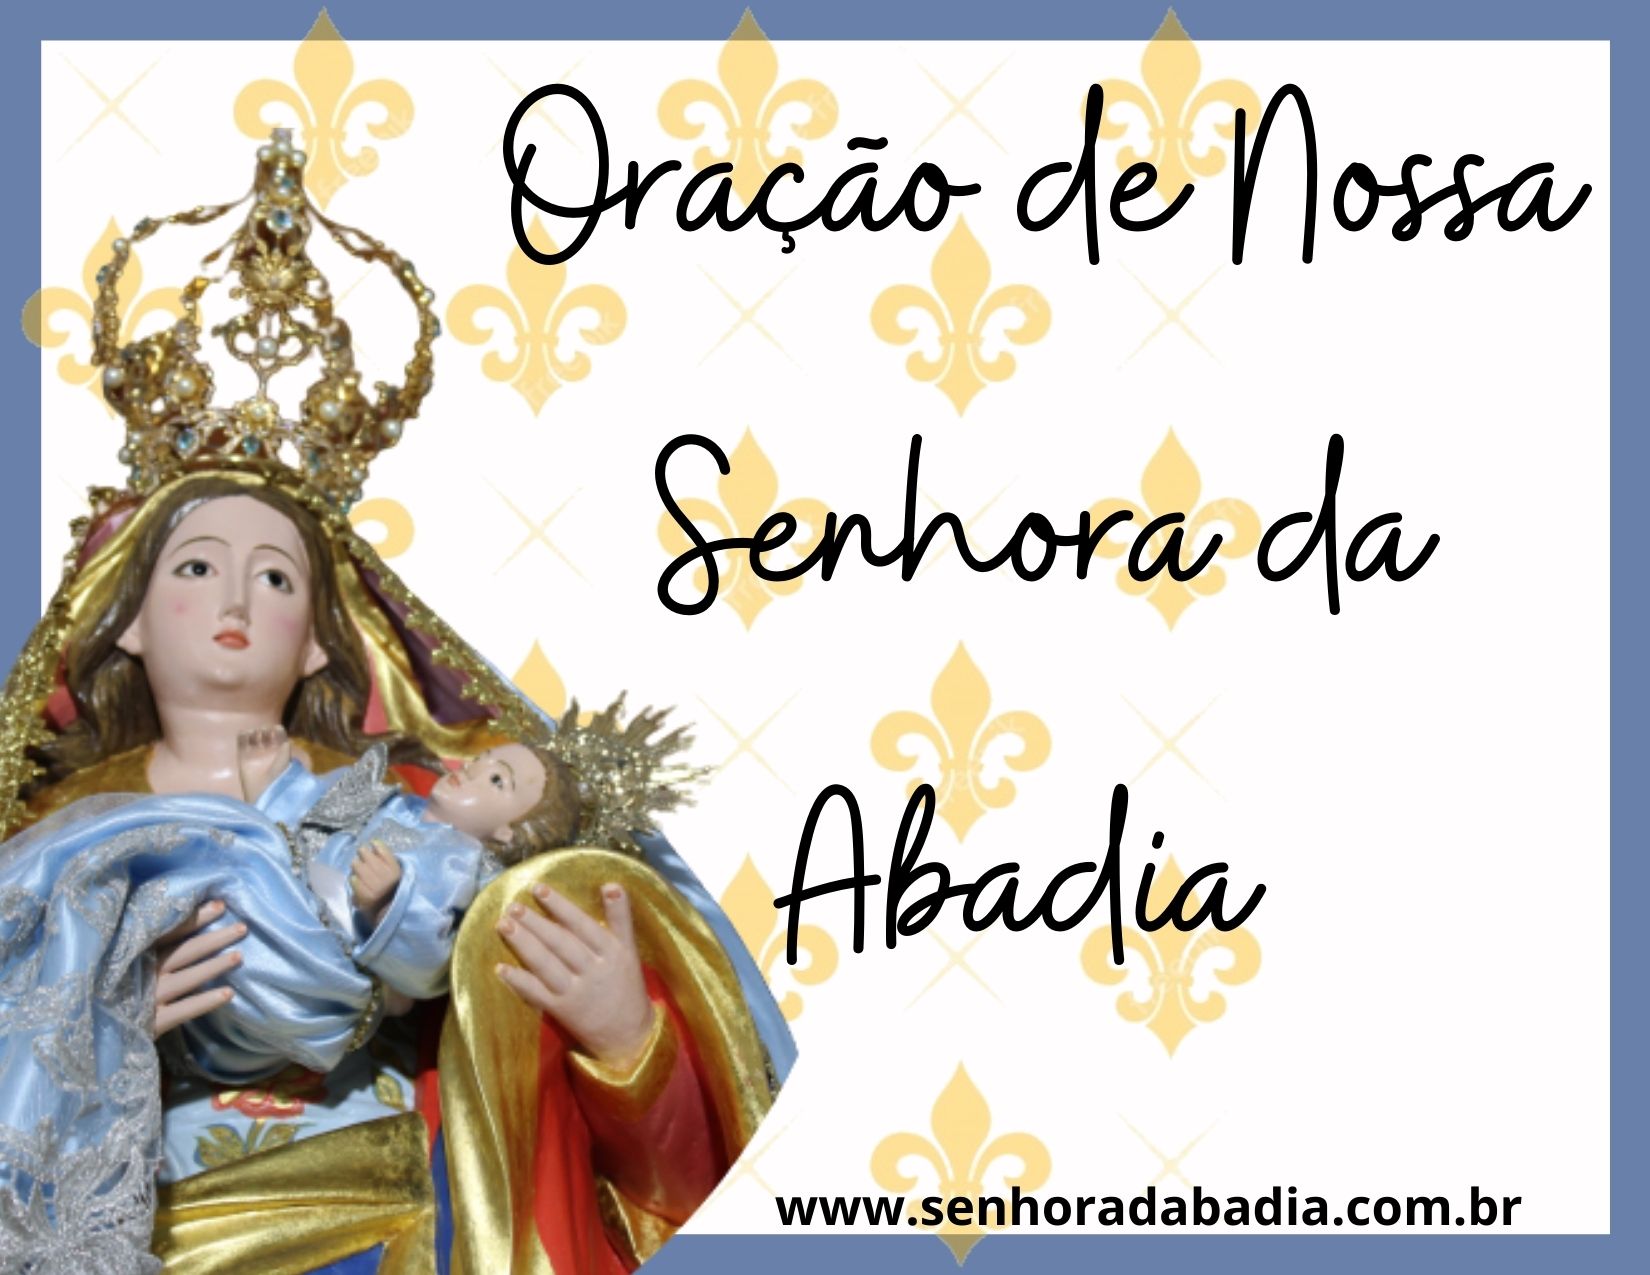 https://www.senhoradabadia.com.br/uploads/imagens/oracao-de-nossa-senhora-da-abadia.jpg